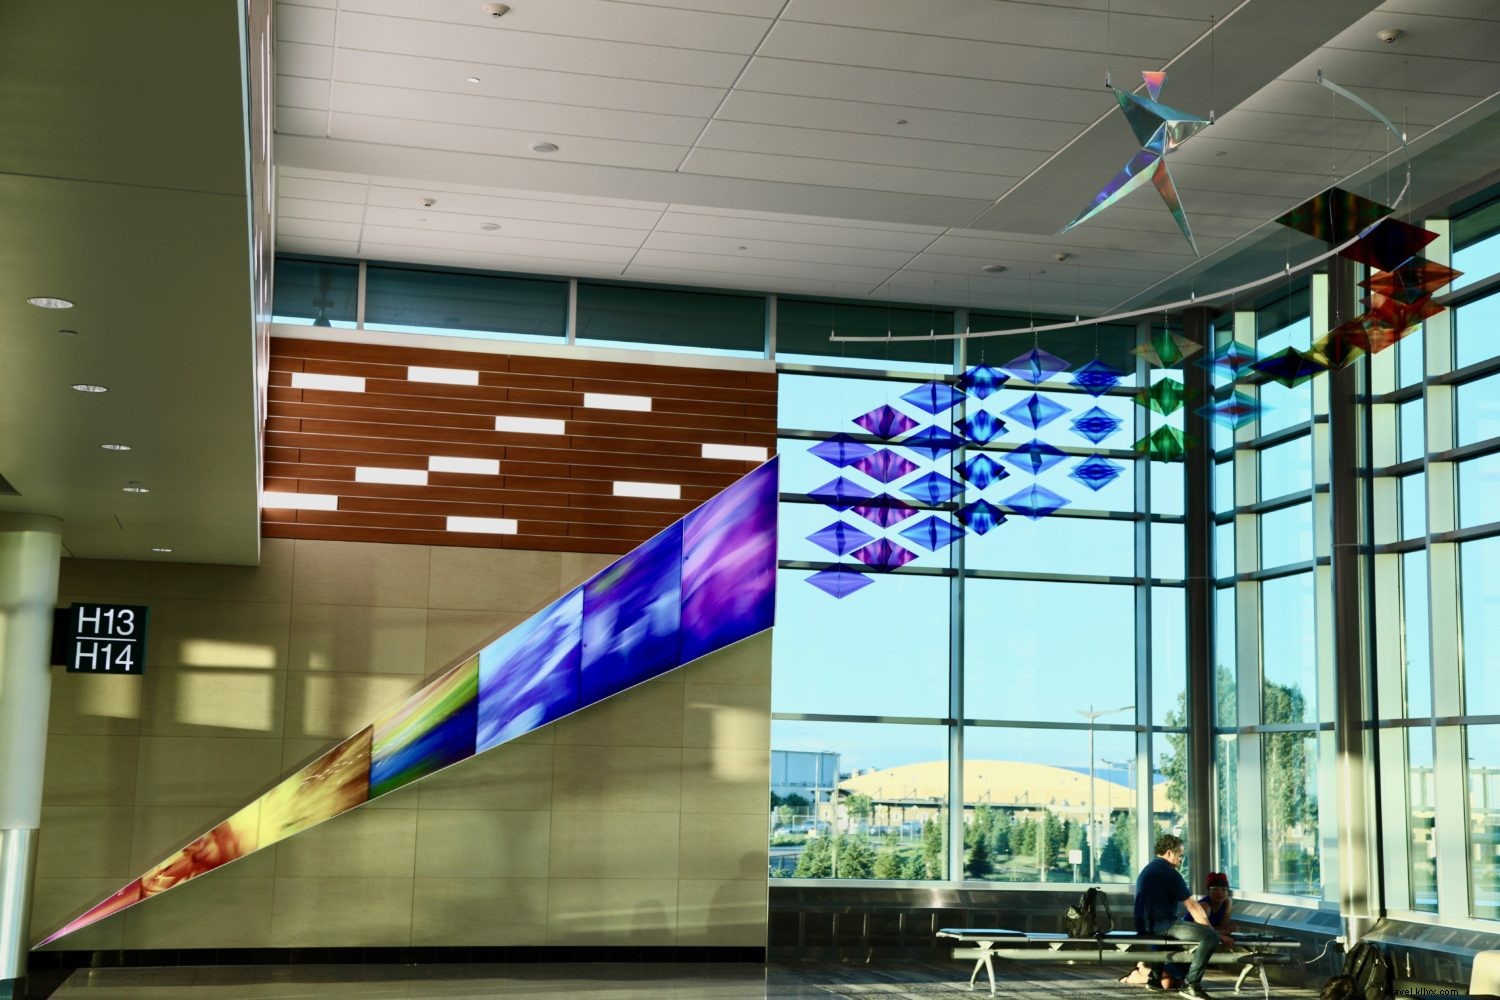 Feitiços de arte no Terminal 2:Iluminações geométricas de Philip Noyed 